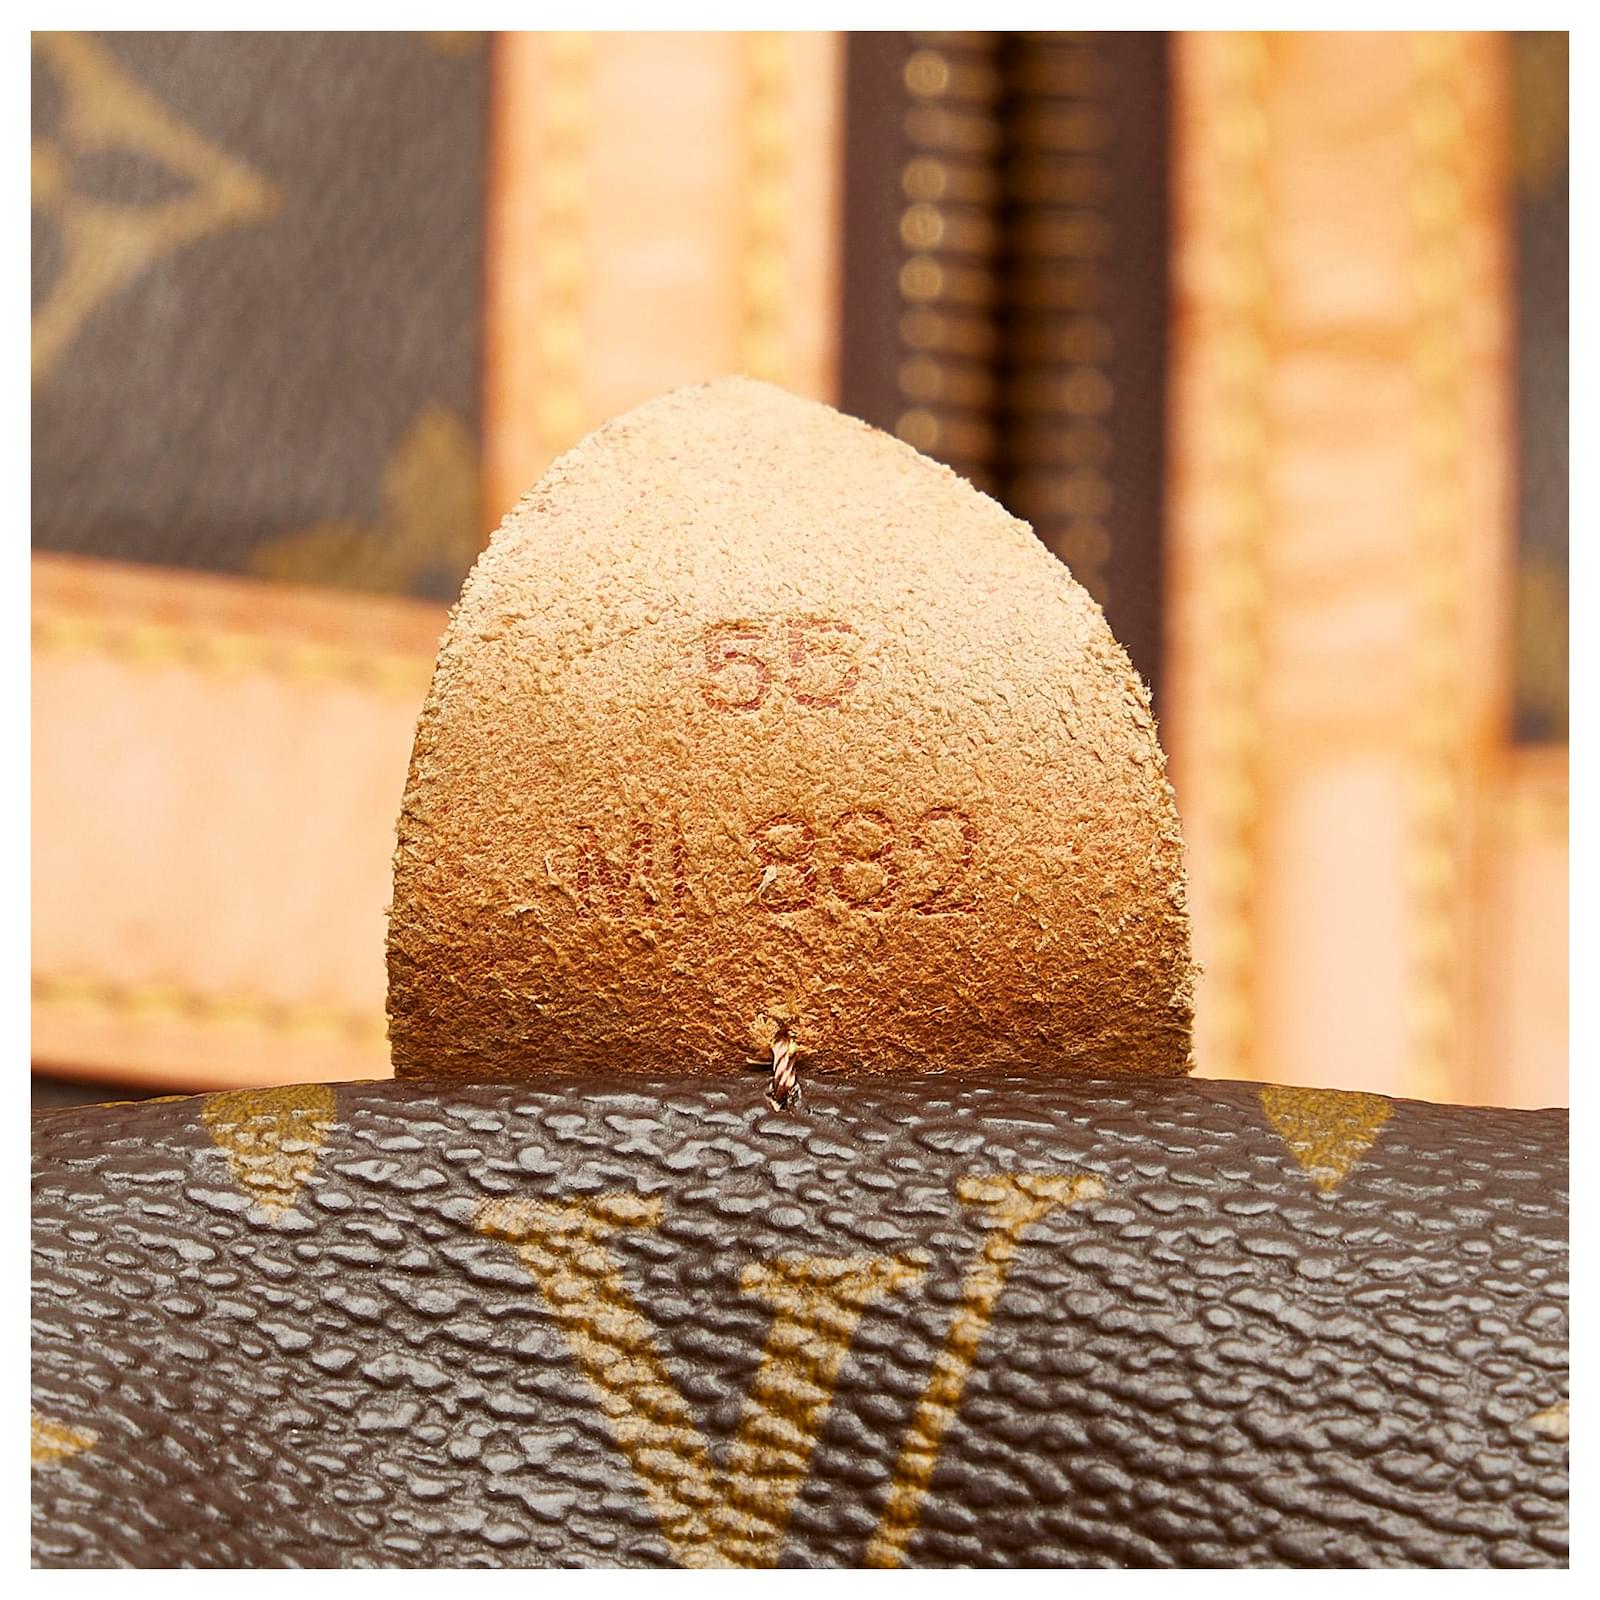 Sac souple cloth 48h bag Louis Vuitton Brown in Cloth - 30185194